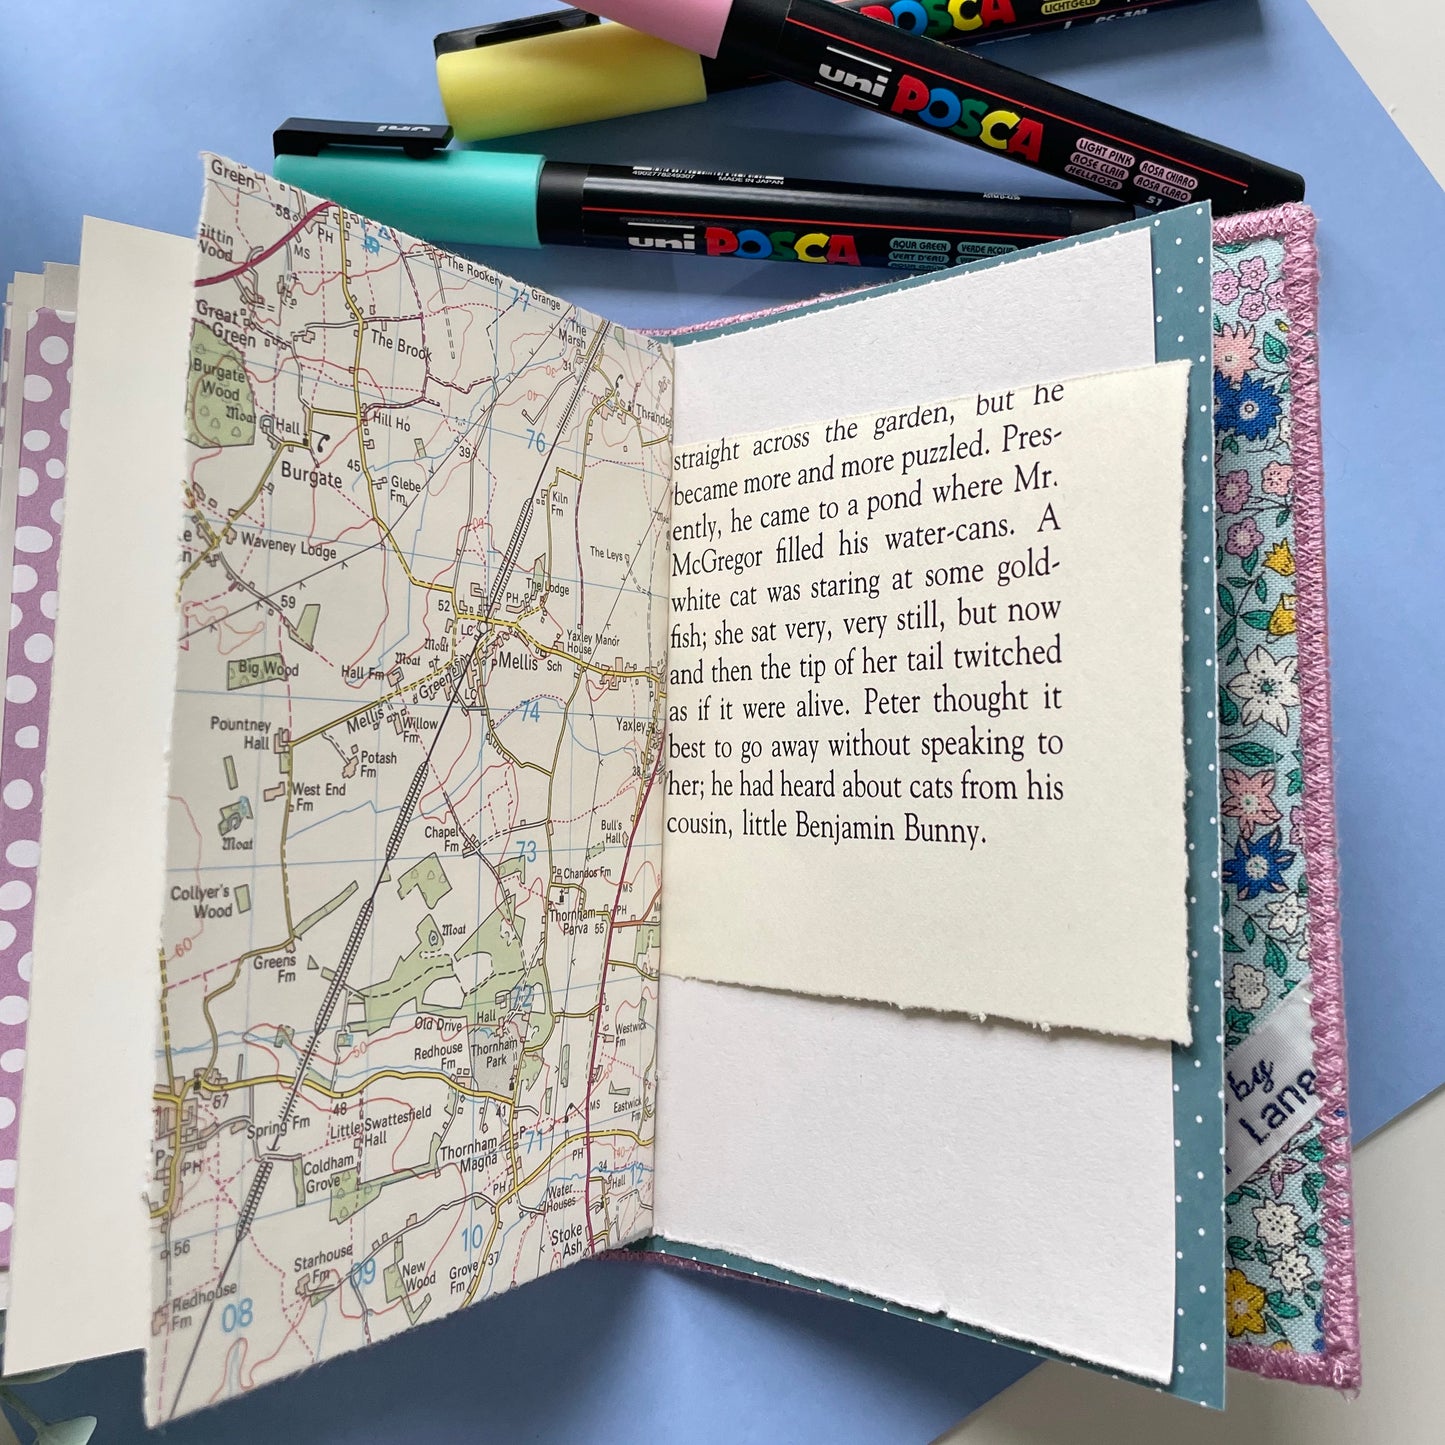 Handmade Fabric Cover Mini Journals